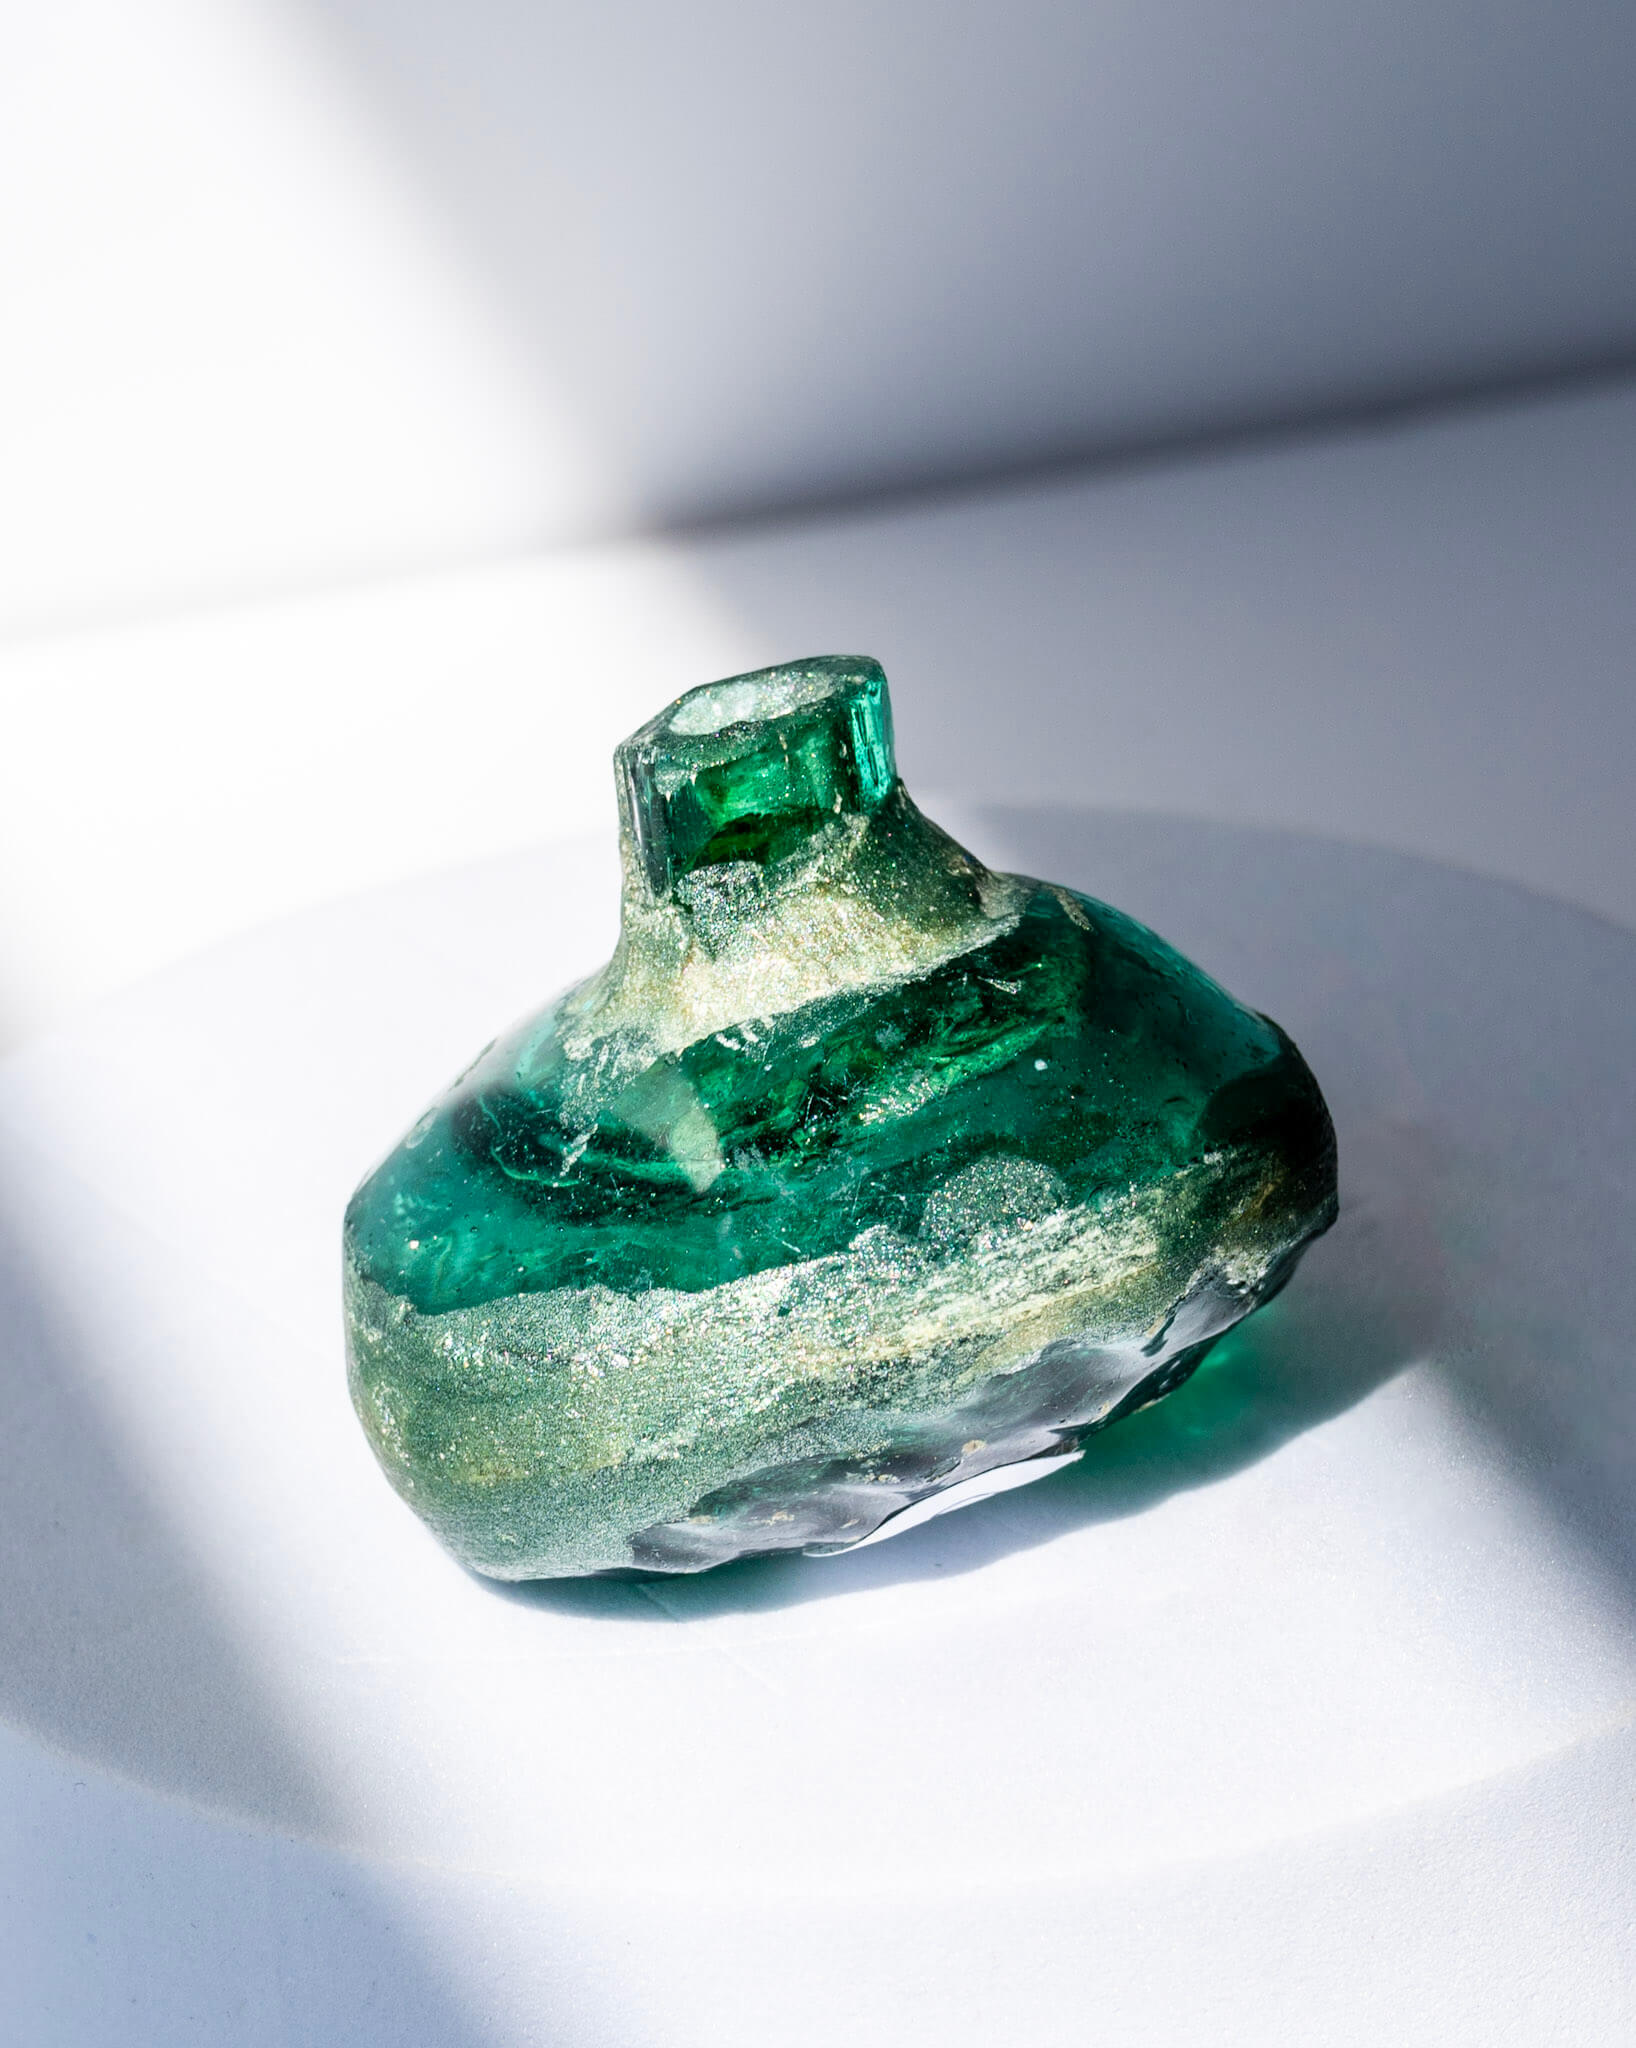 Ancient Roman Glass Bottle Vial - 110